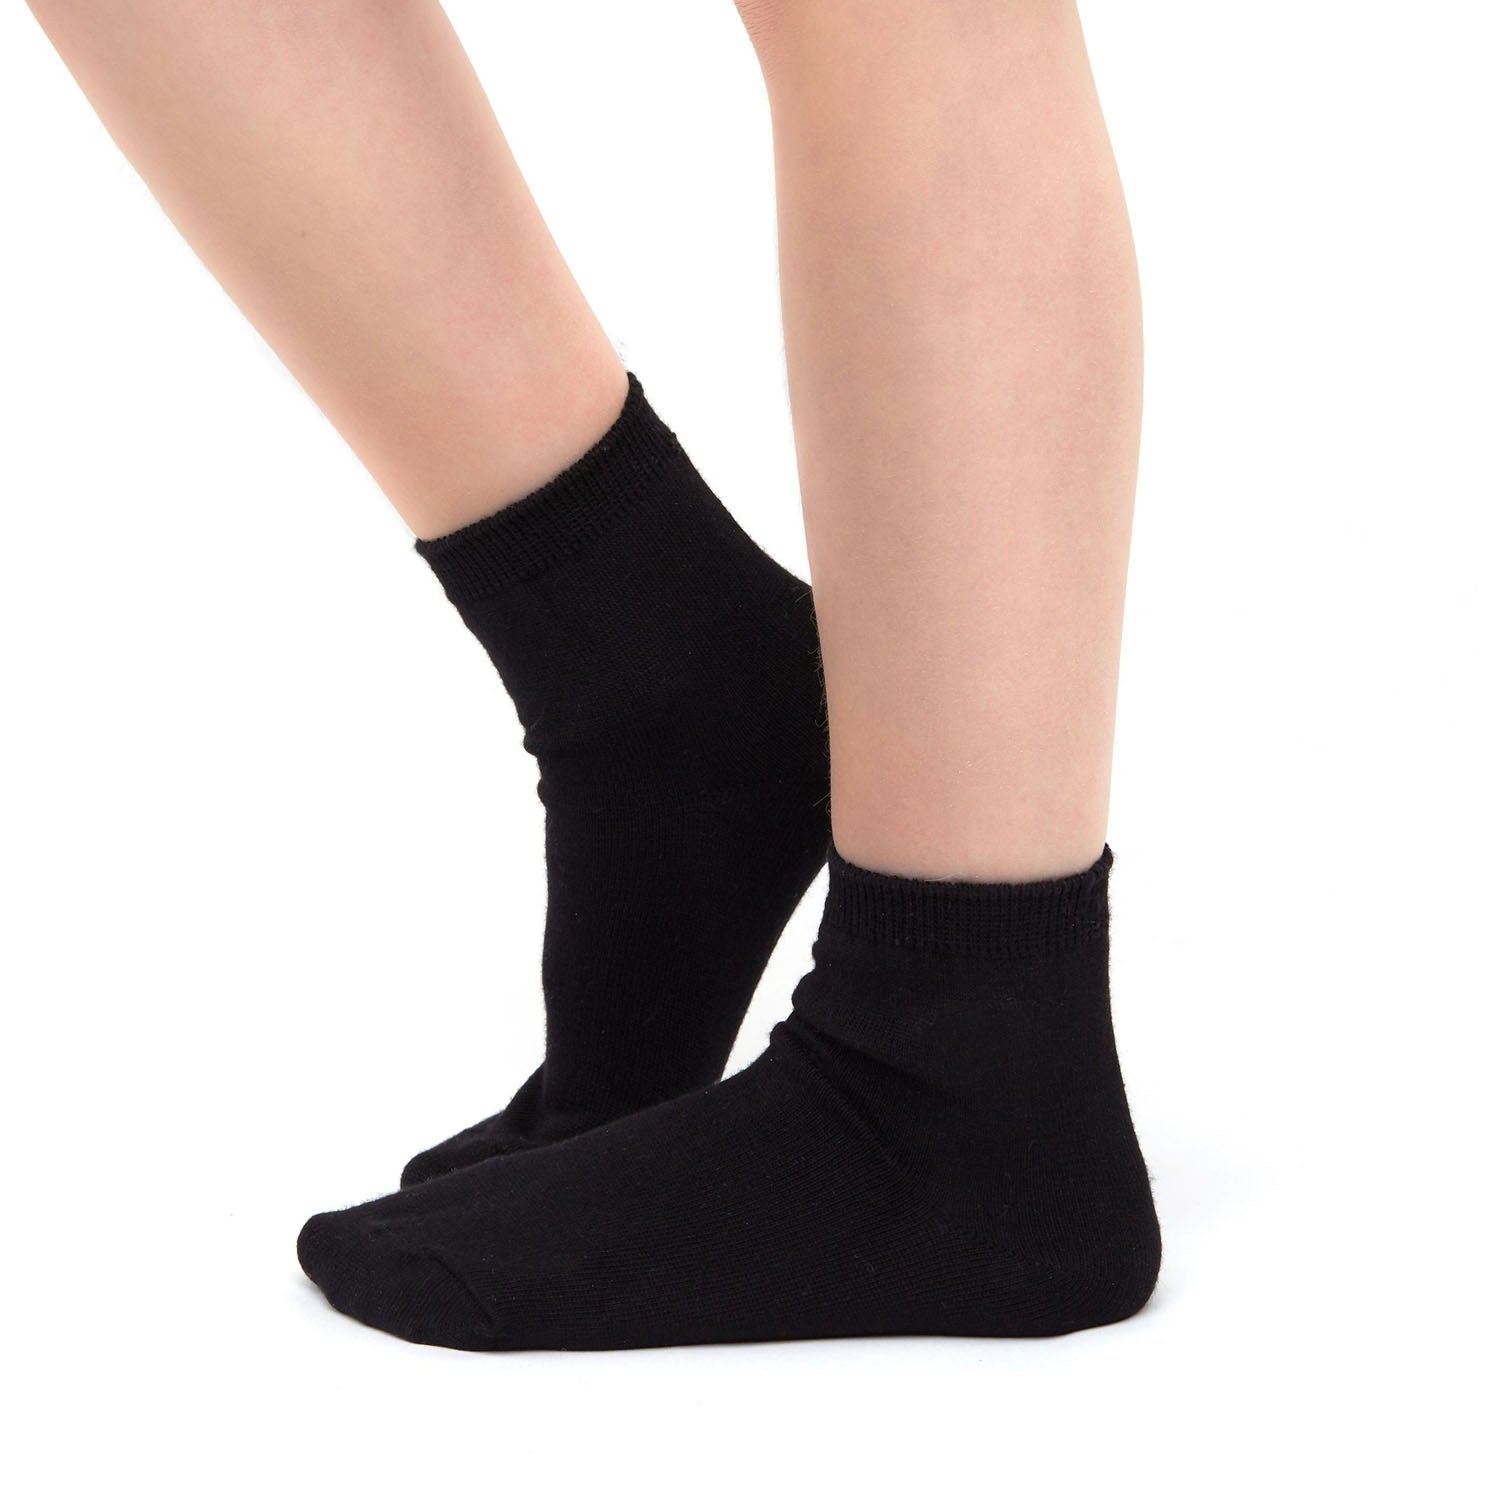 Black Cotton School Ankle Socks for Children 5 Pair